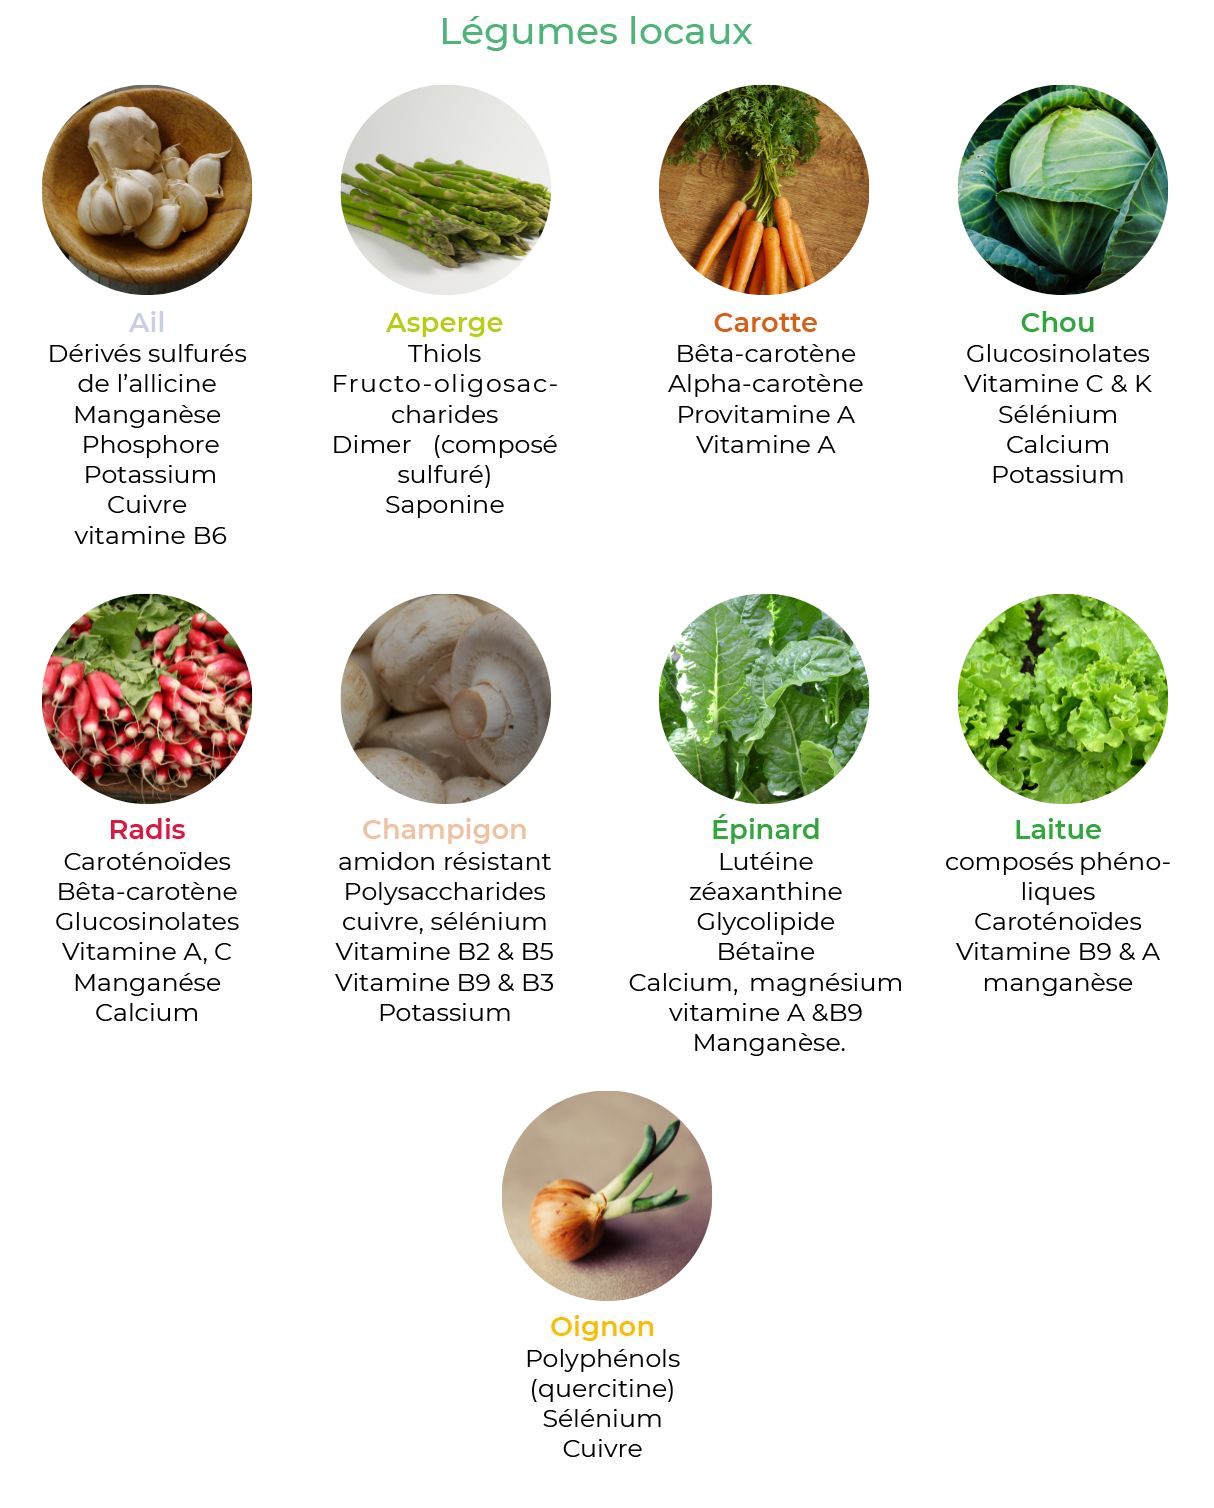 L'ail - Fiche légume, valeurs nutritionnelles, calories, santé